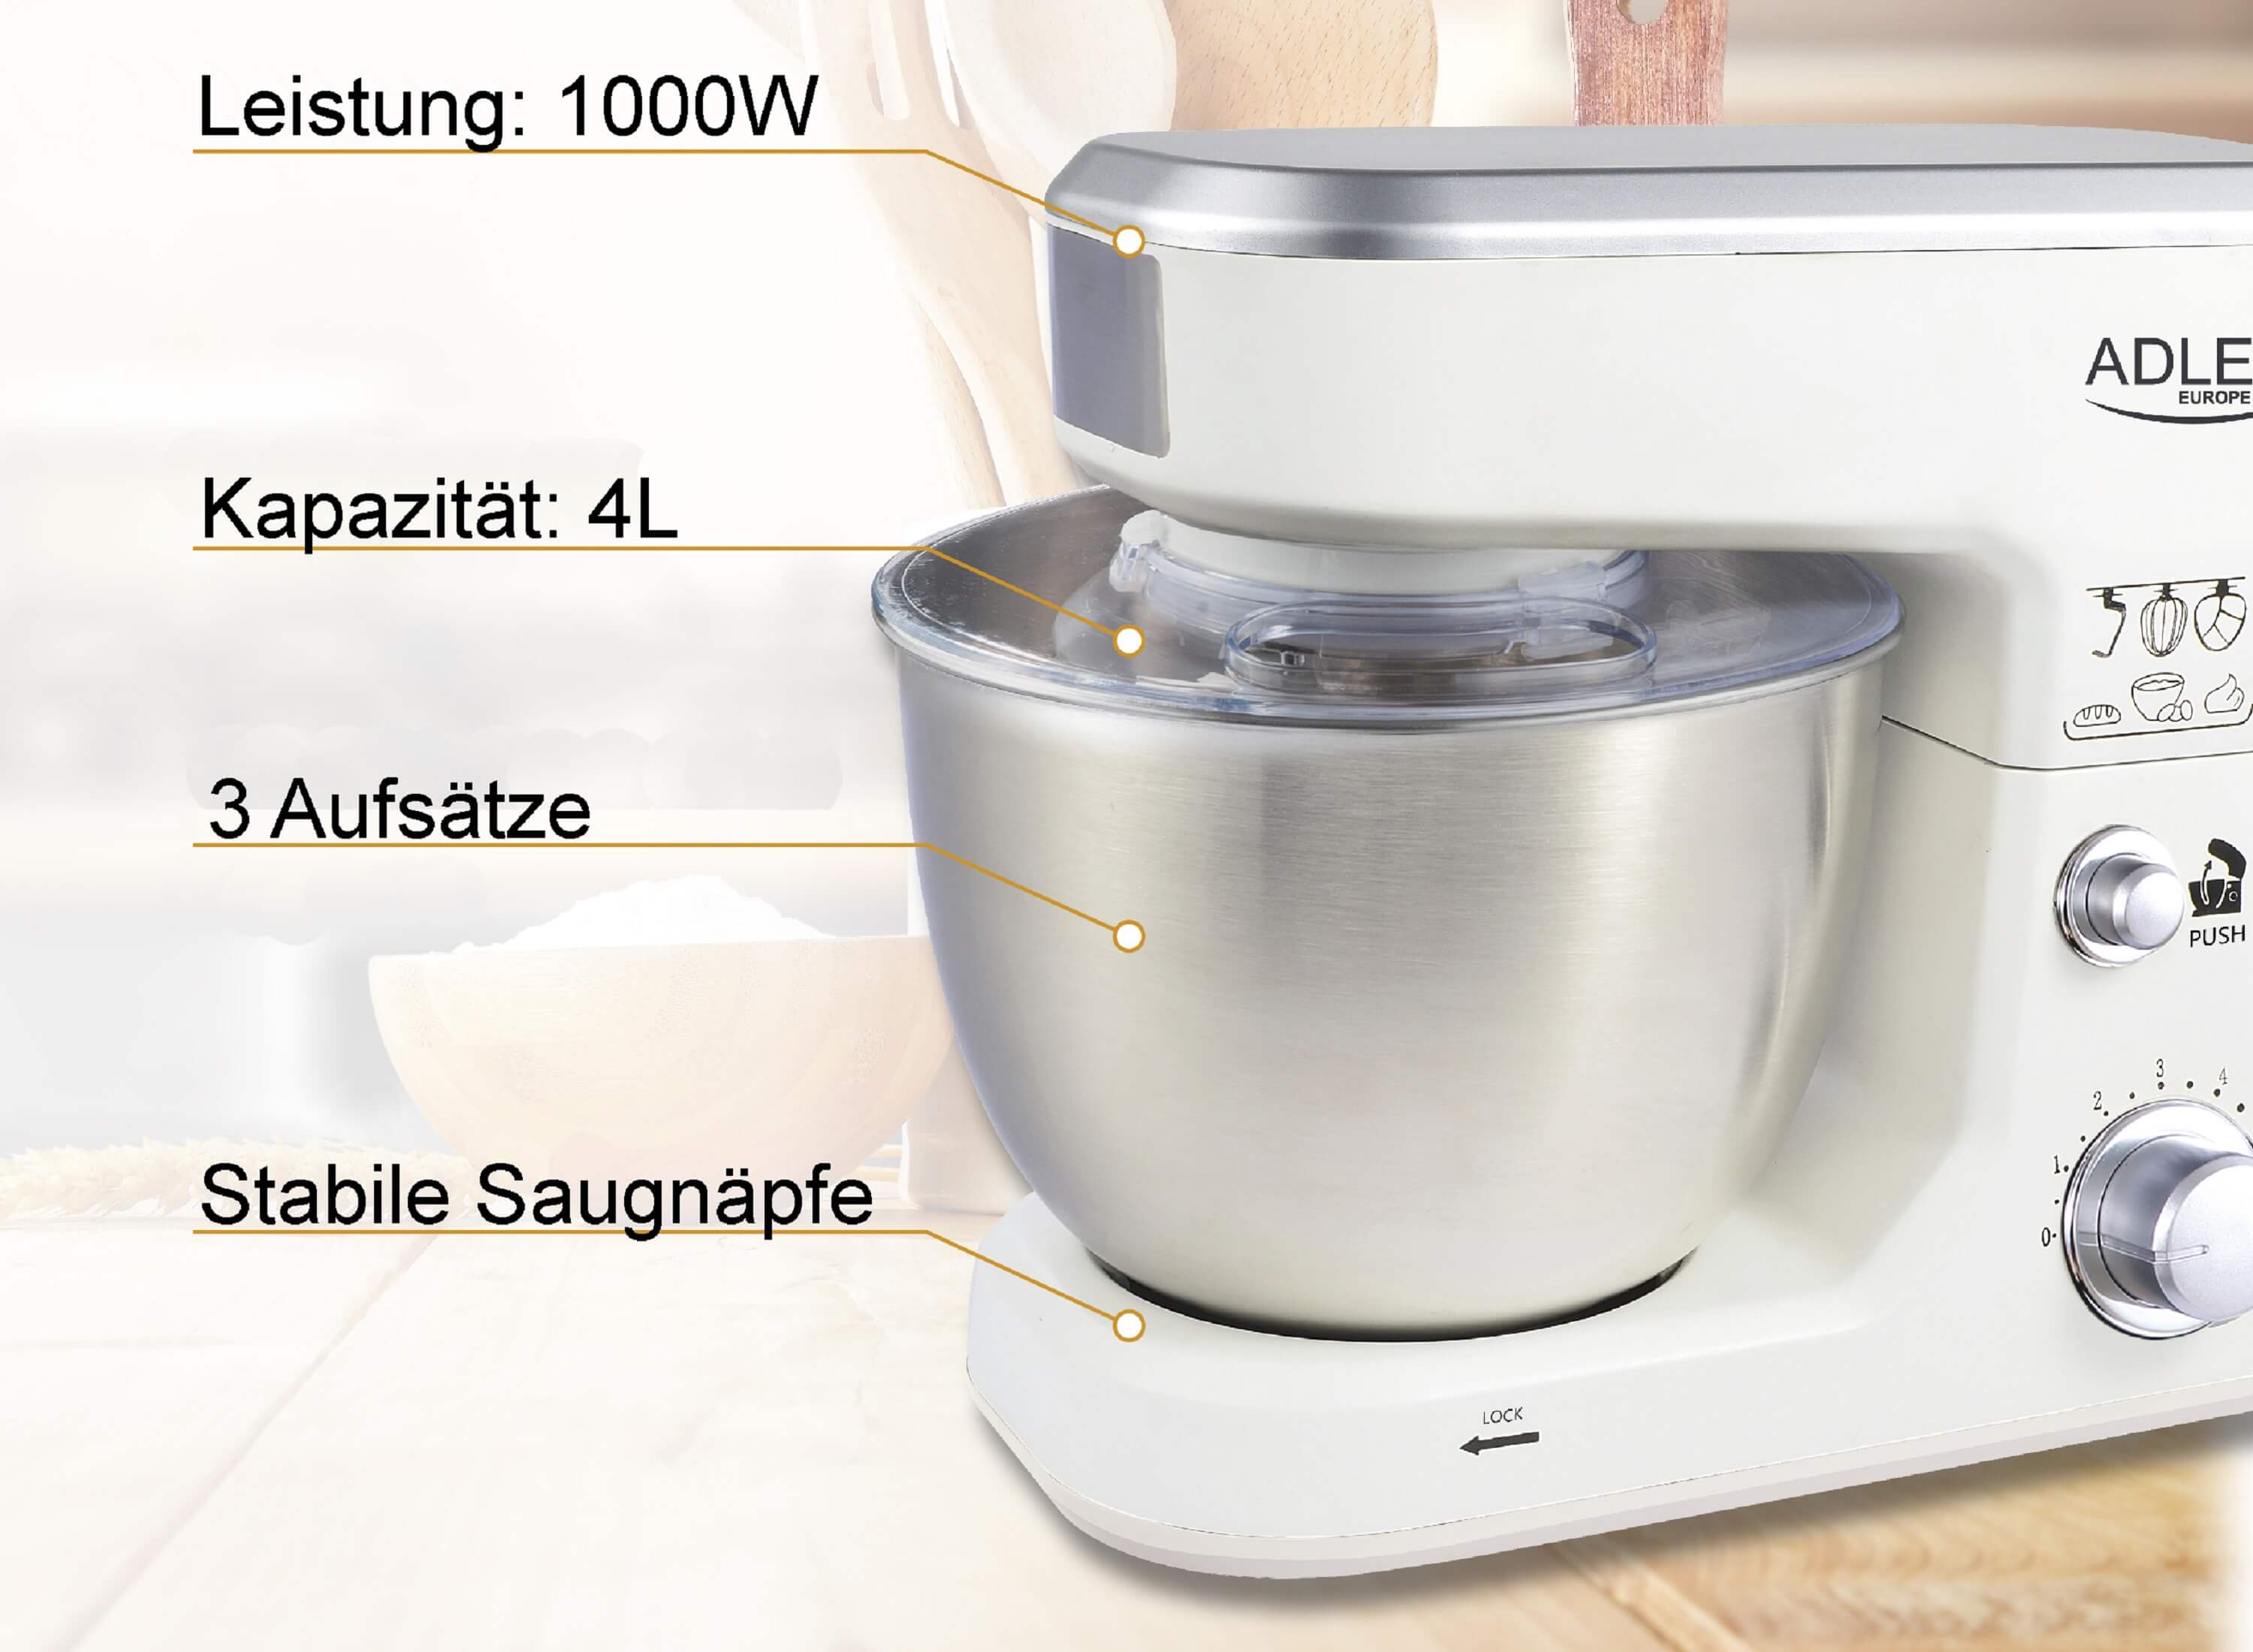 ADLER EUROPE AD-4216 1000 Liter, Küchenmaschine Watt) (Rührschüsselkapazität: 4 Weiß